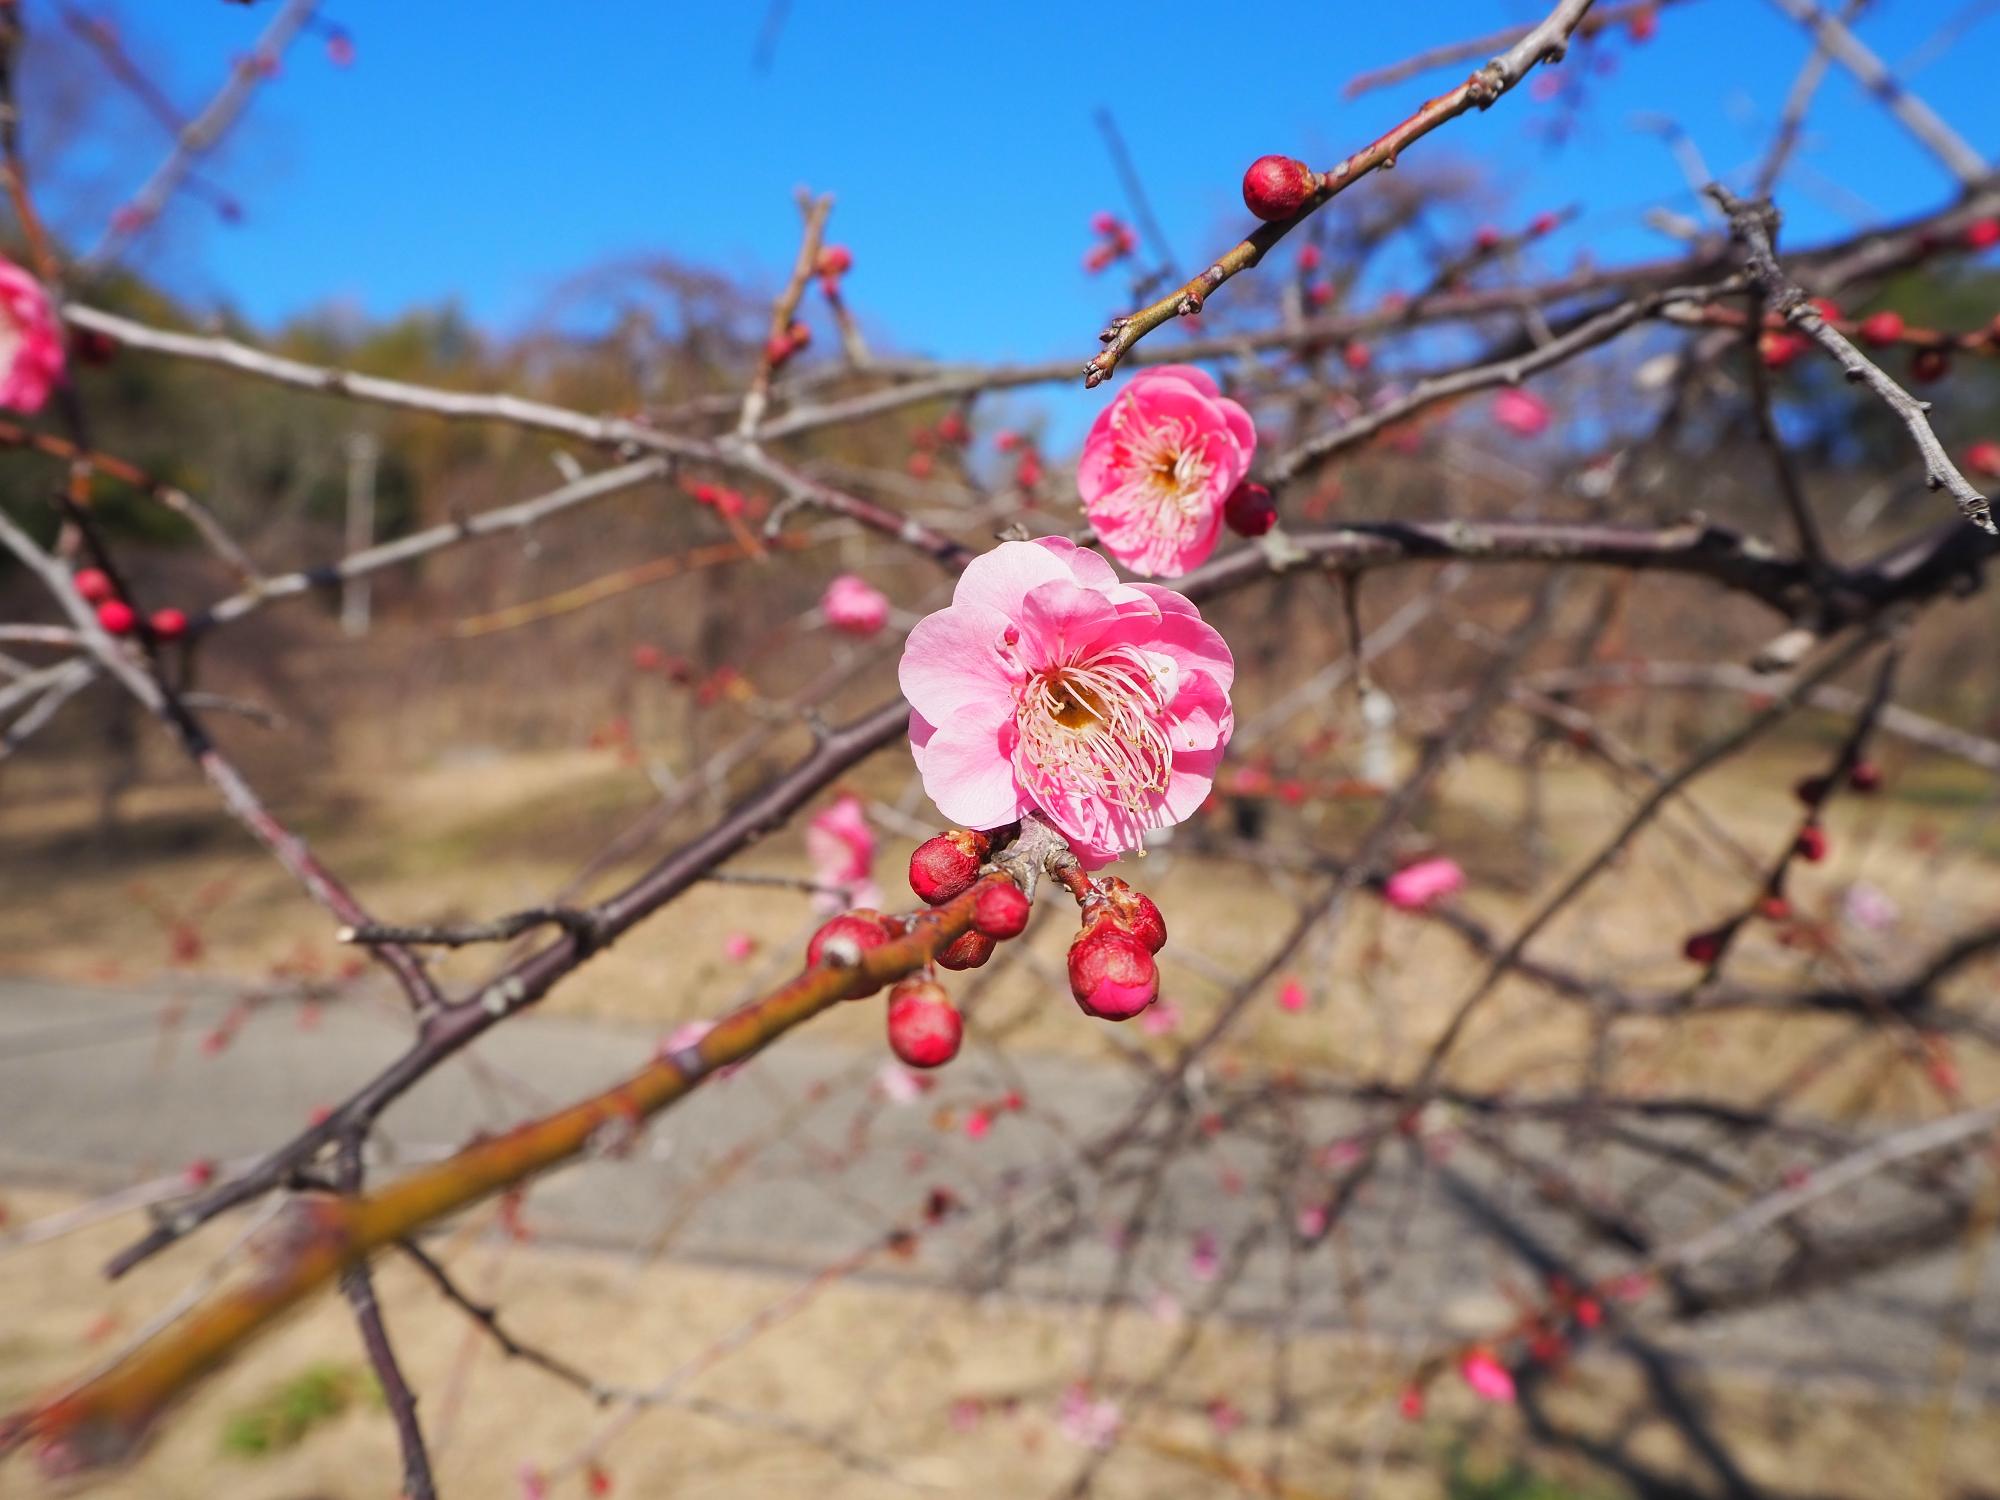 梅見の丘のシダレウメ、紅梅で何本かの木では数輪の花が咲いている状況です。